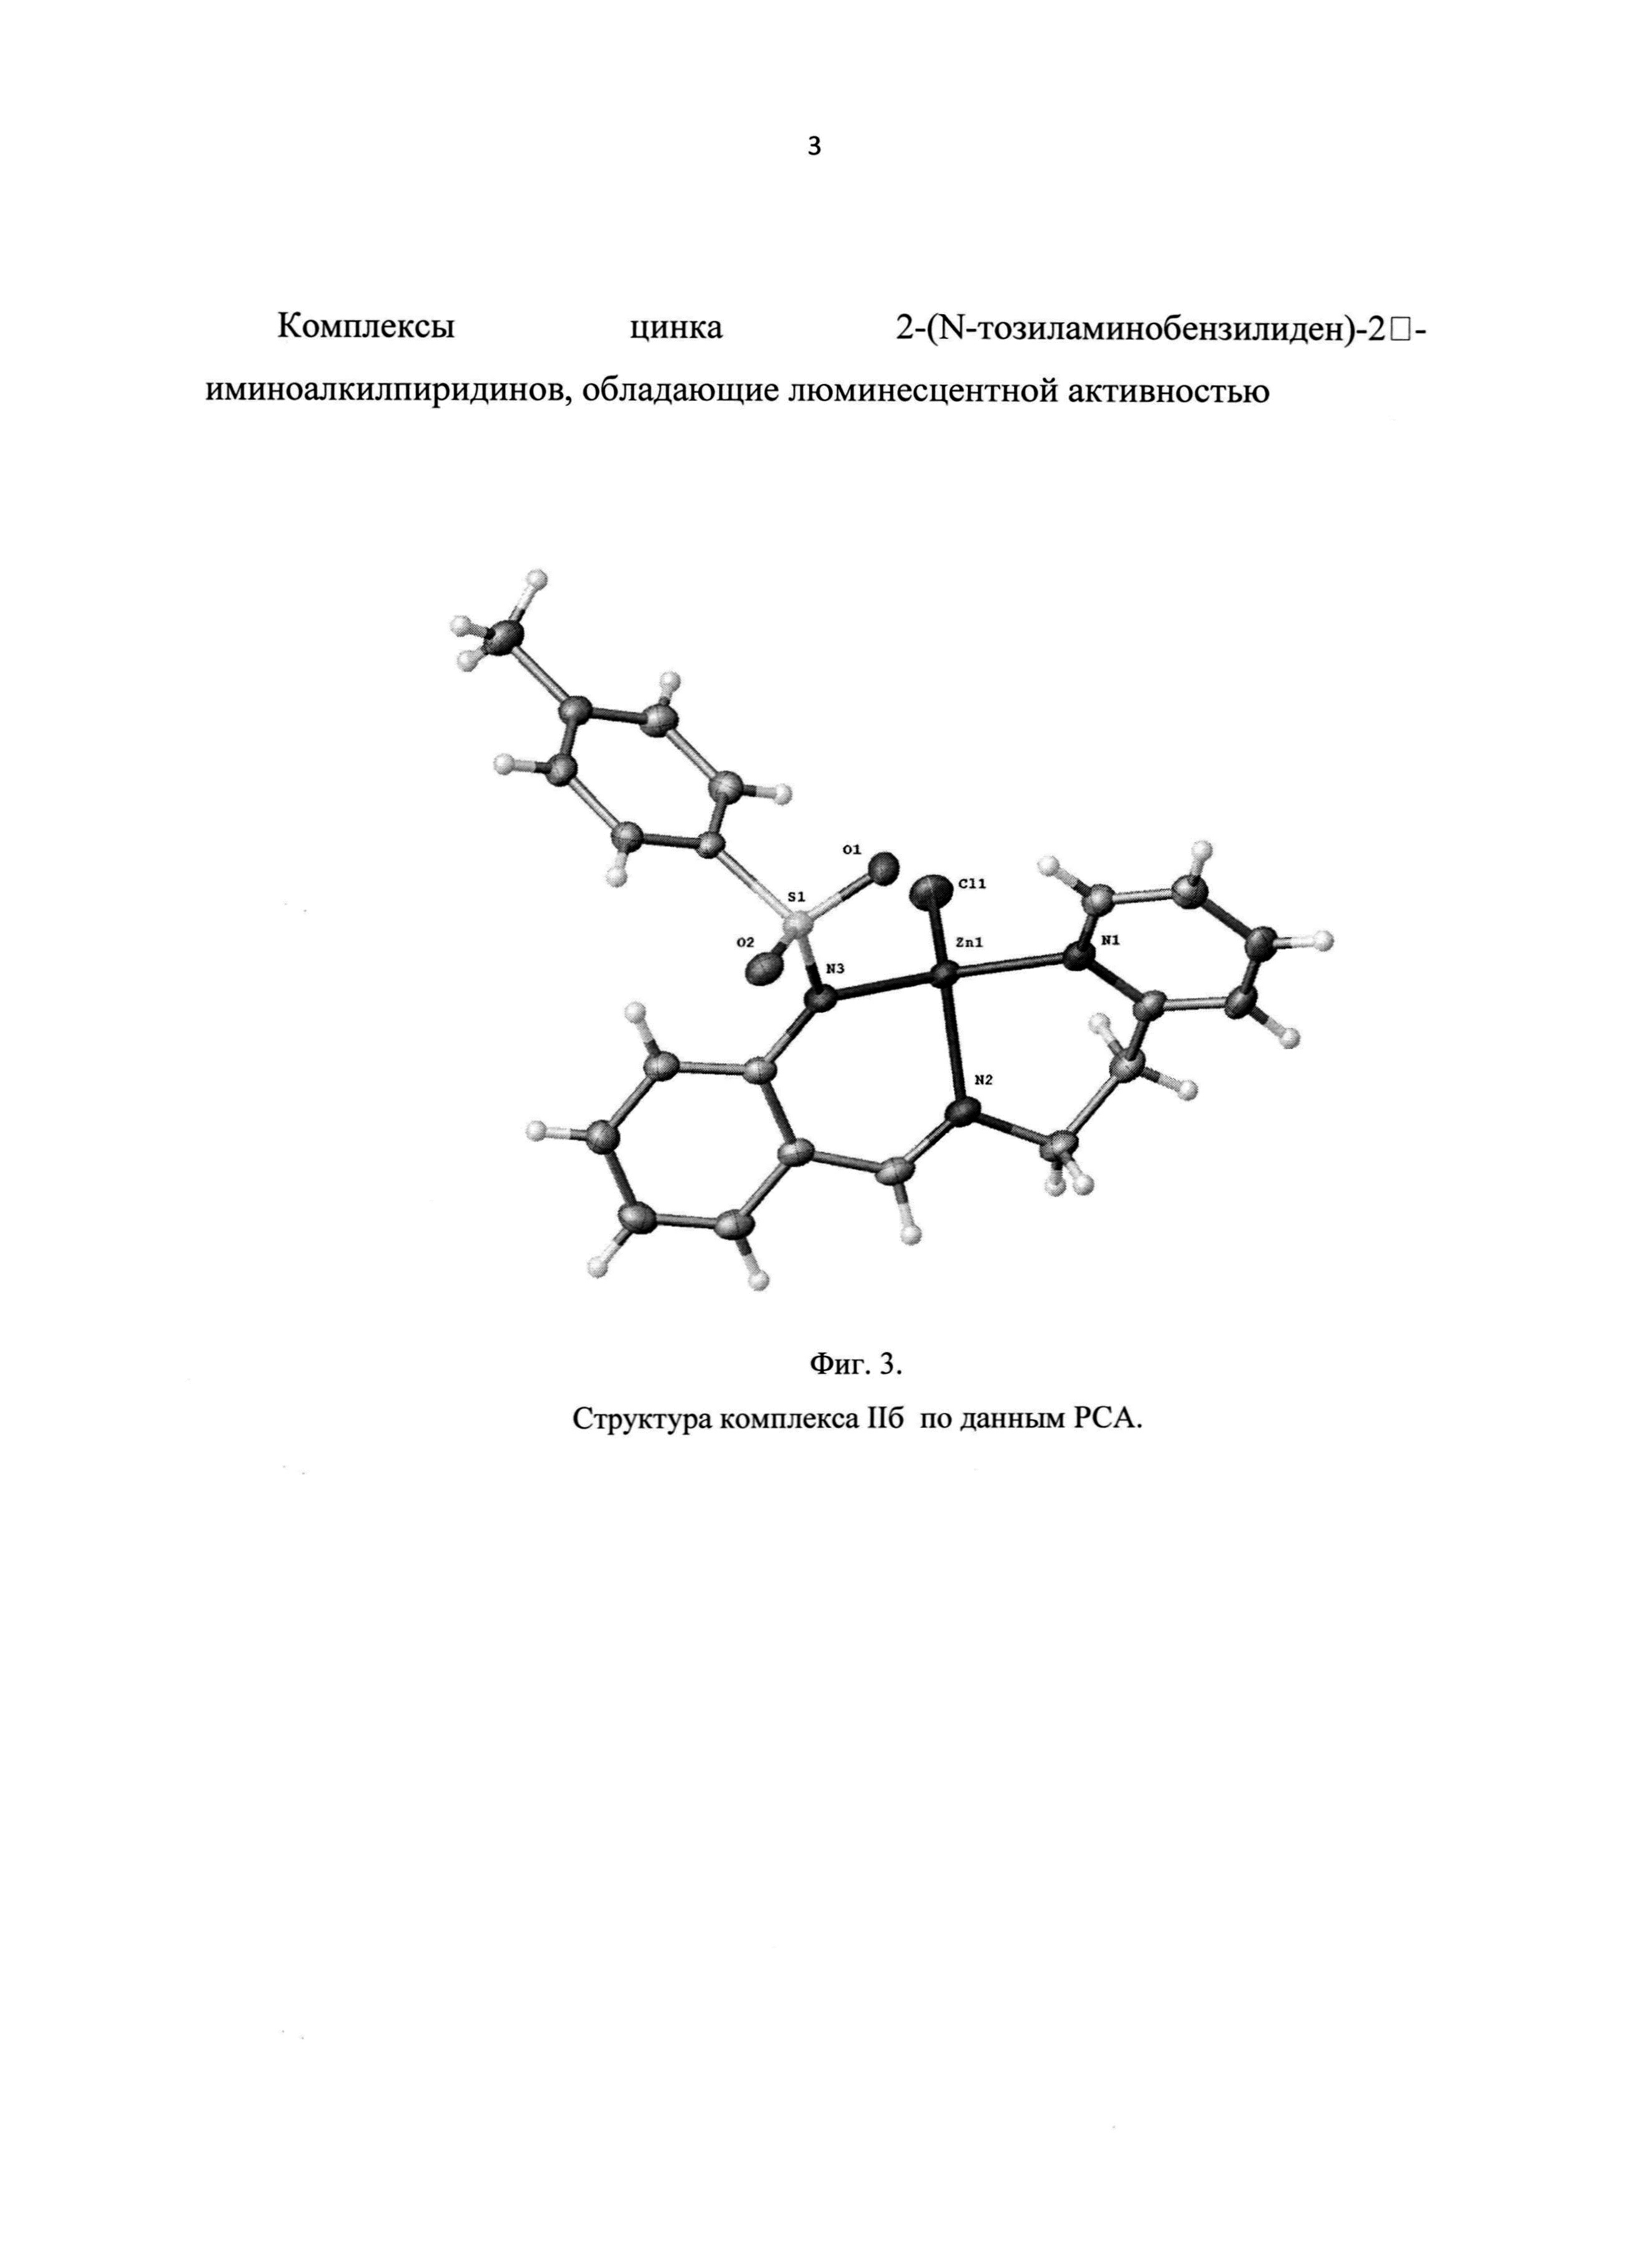 Комплексы цинка 2-(N-тозиламинобензилиден)-2'-иминоалкилпиридинов, обладающие люминесцентной активностью